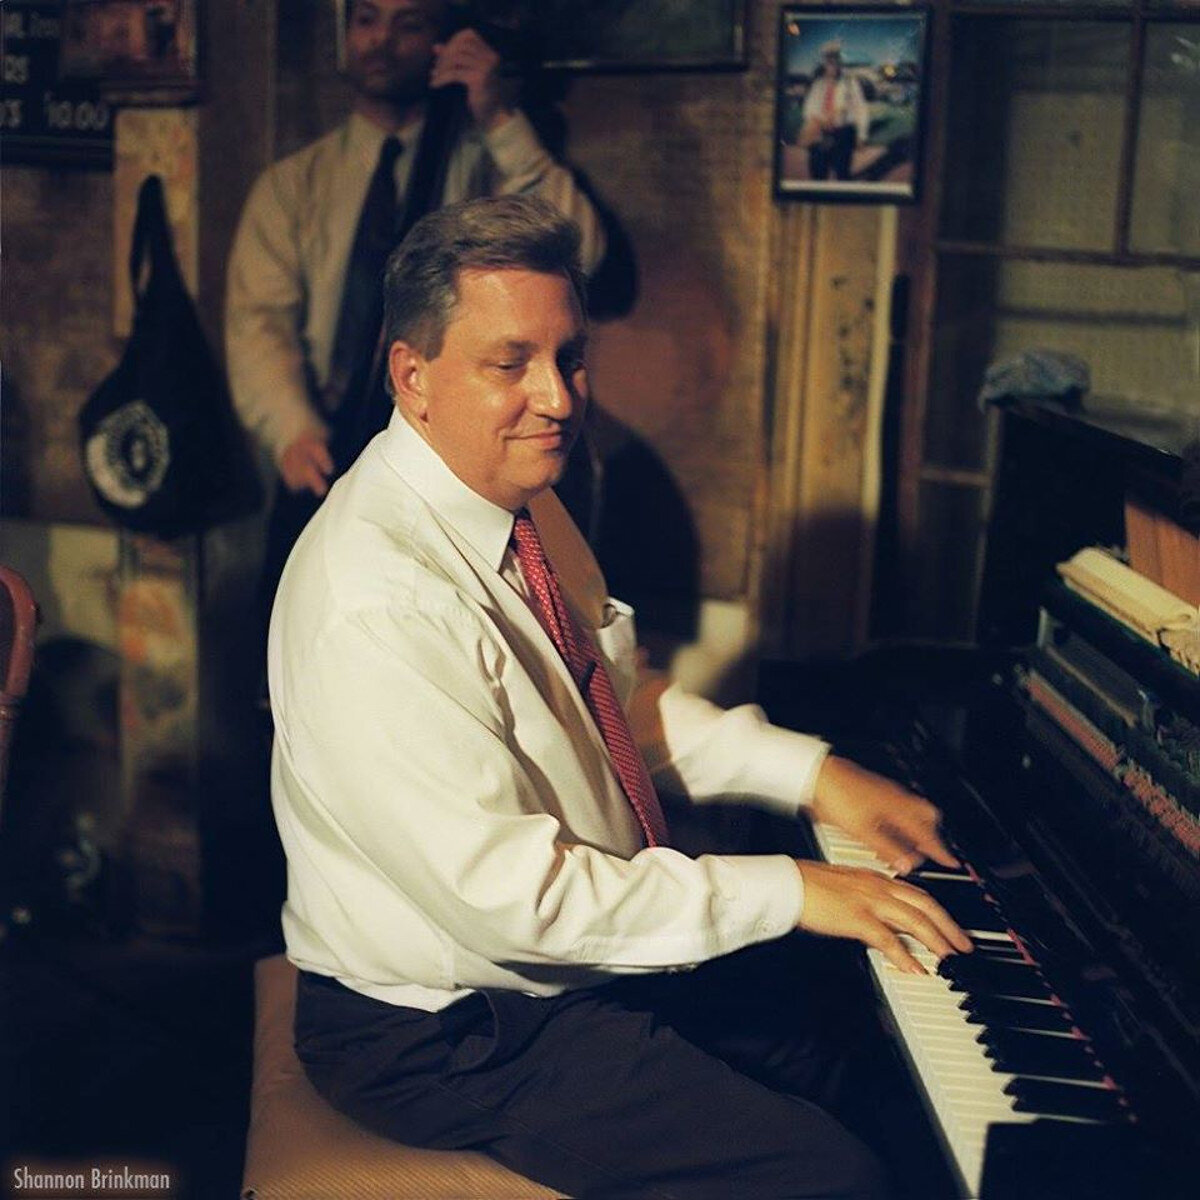 John Royen at the piano